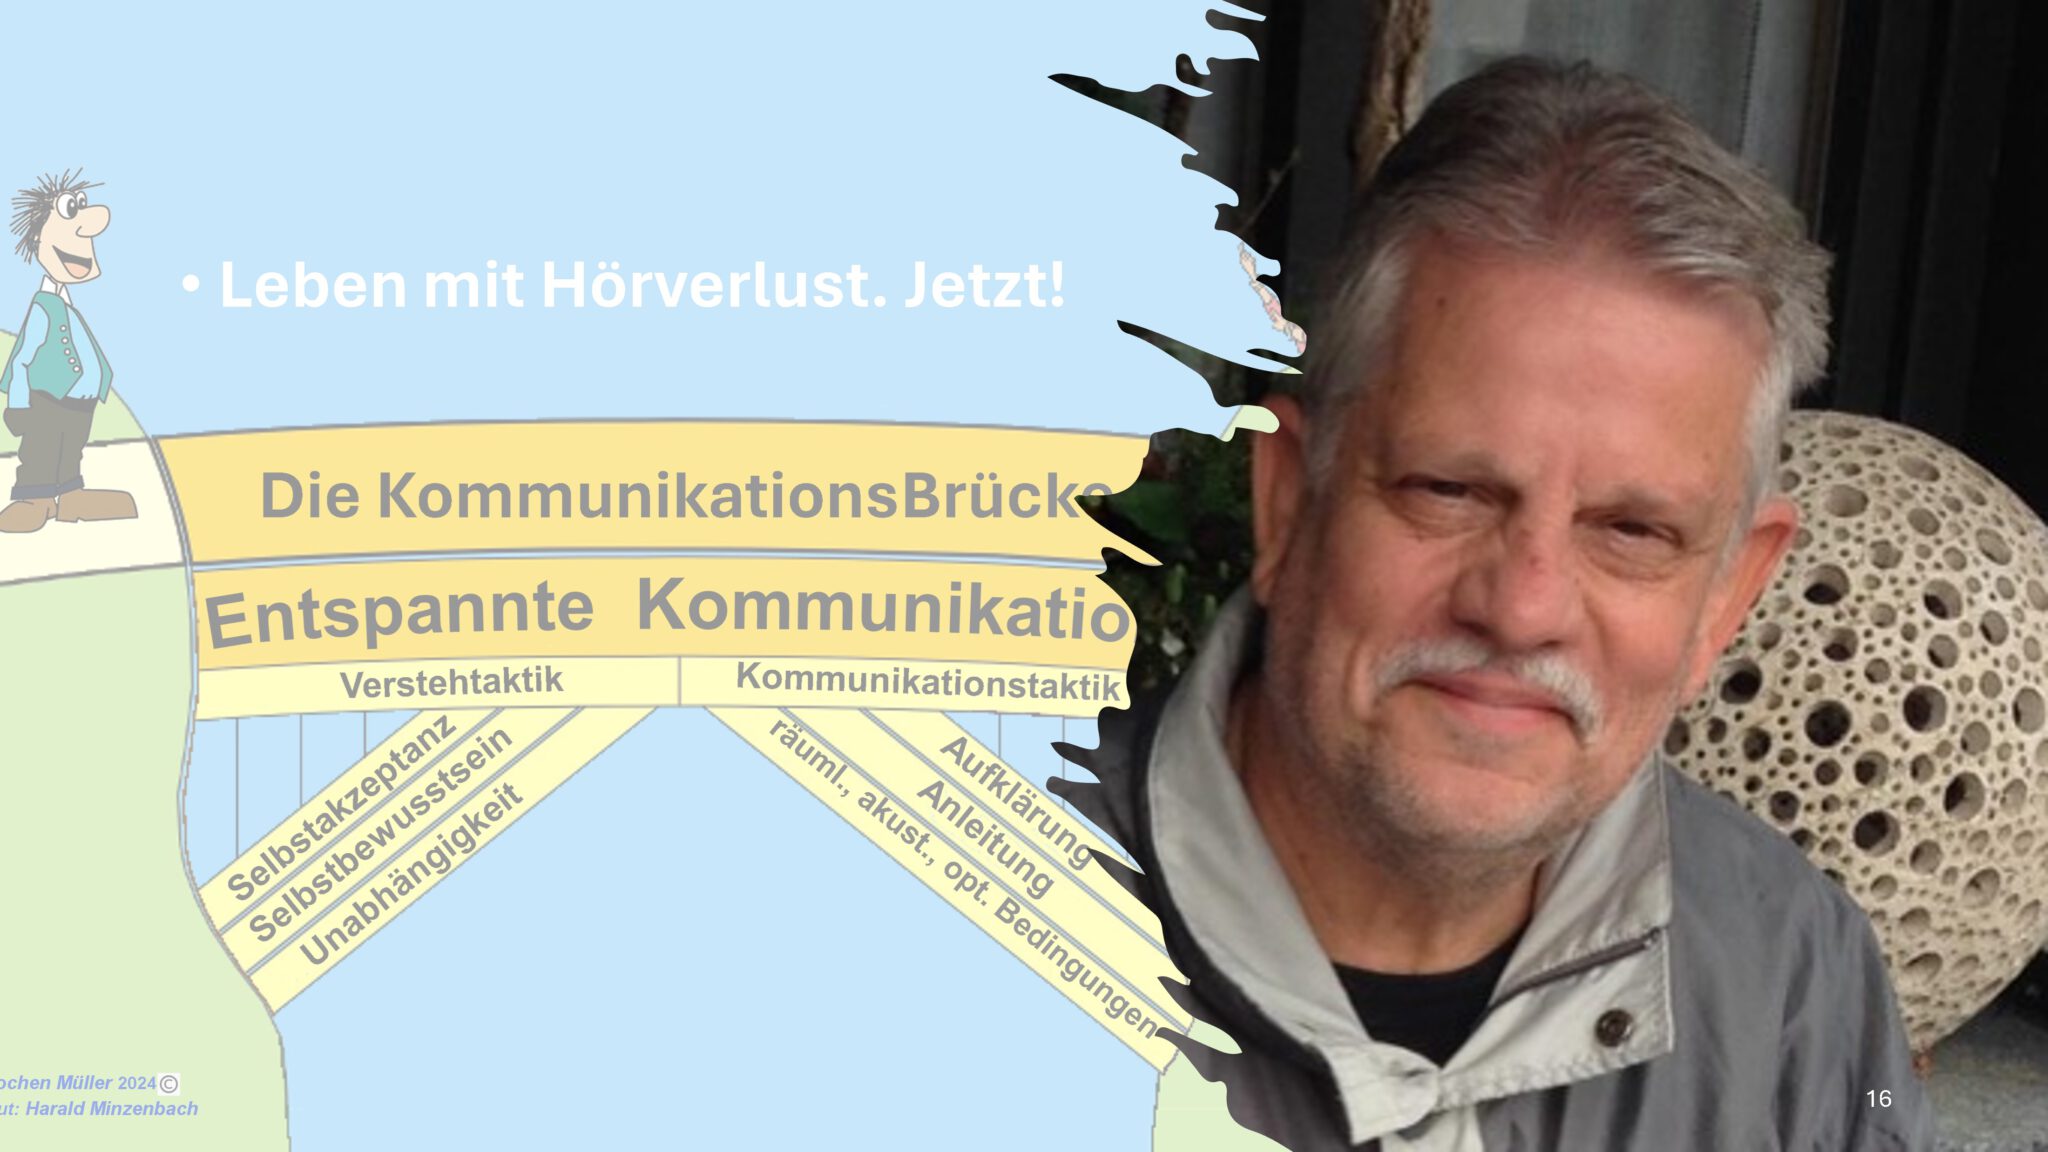 Kommunikationsbrücken-Modell und Portrait von Jochen Müller